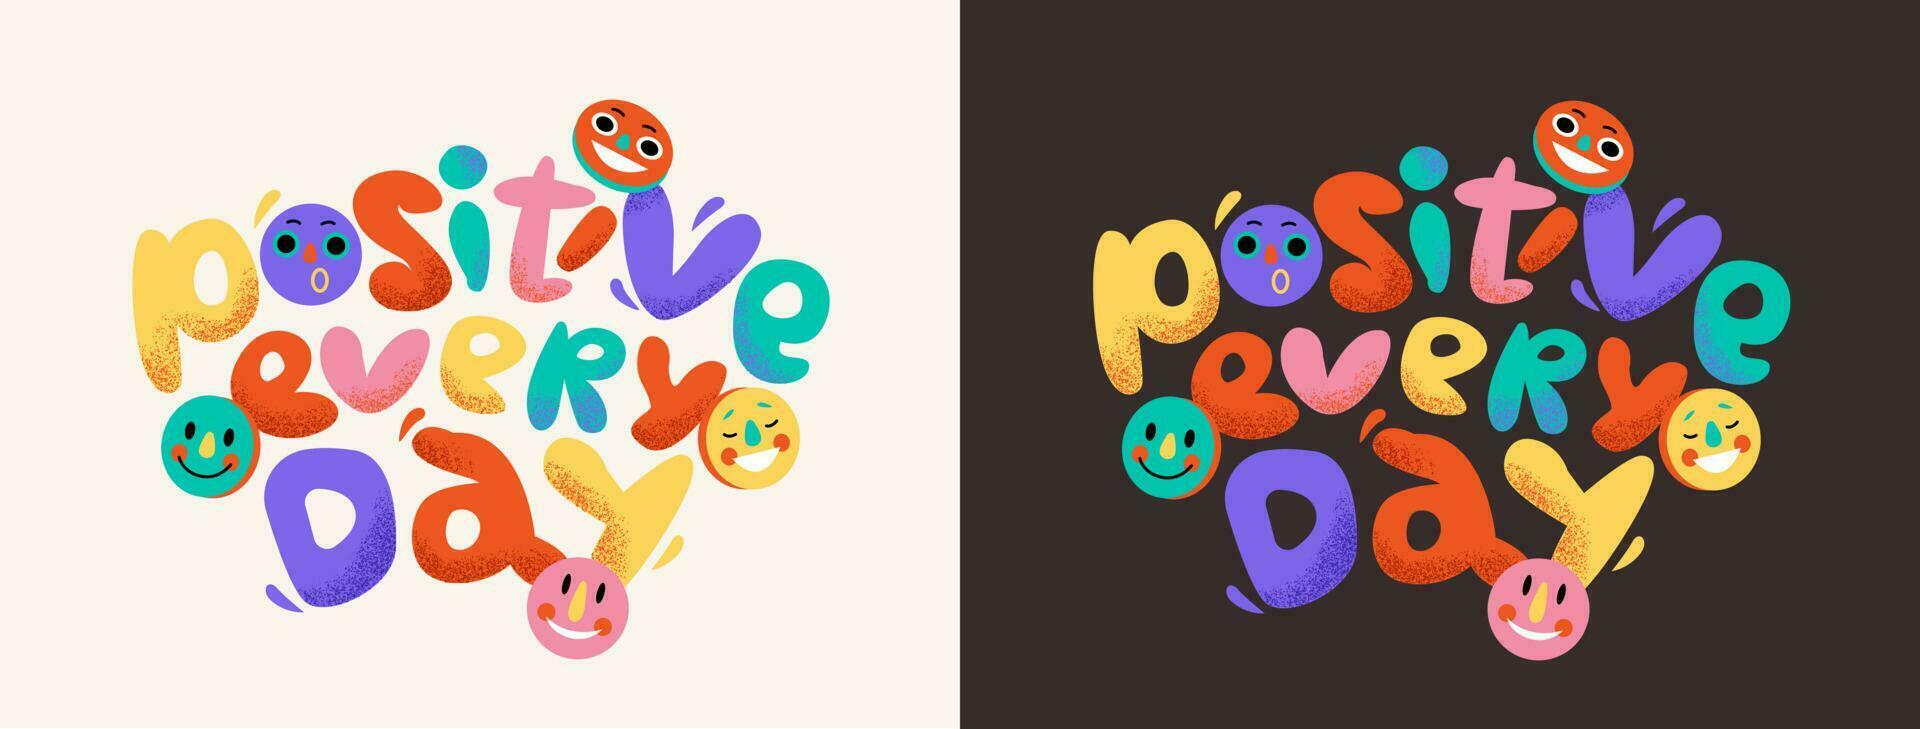 positivo ogni giorno motivazionale manifesto con astratto lettere e sorridente emoji. bolla font nel il Groovy stile. vettore illustrazione